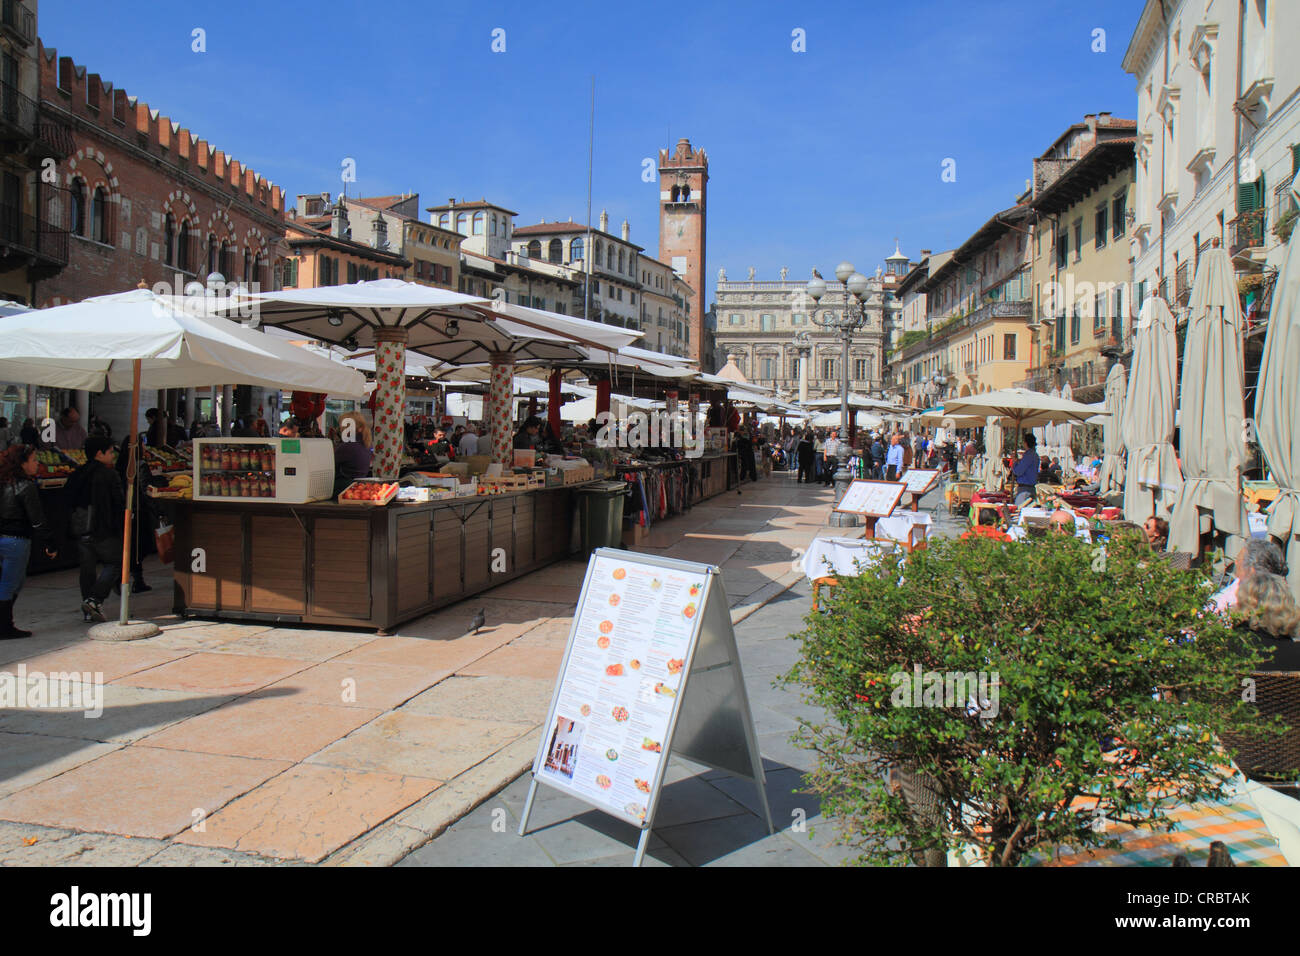 Piazza delle Erbe square, Verona, Veneto region, Italy, Europe Stock Photo